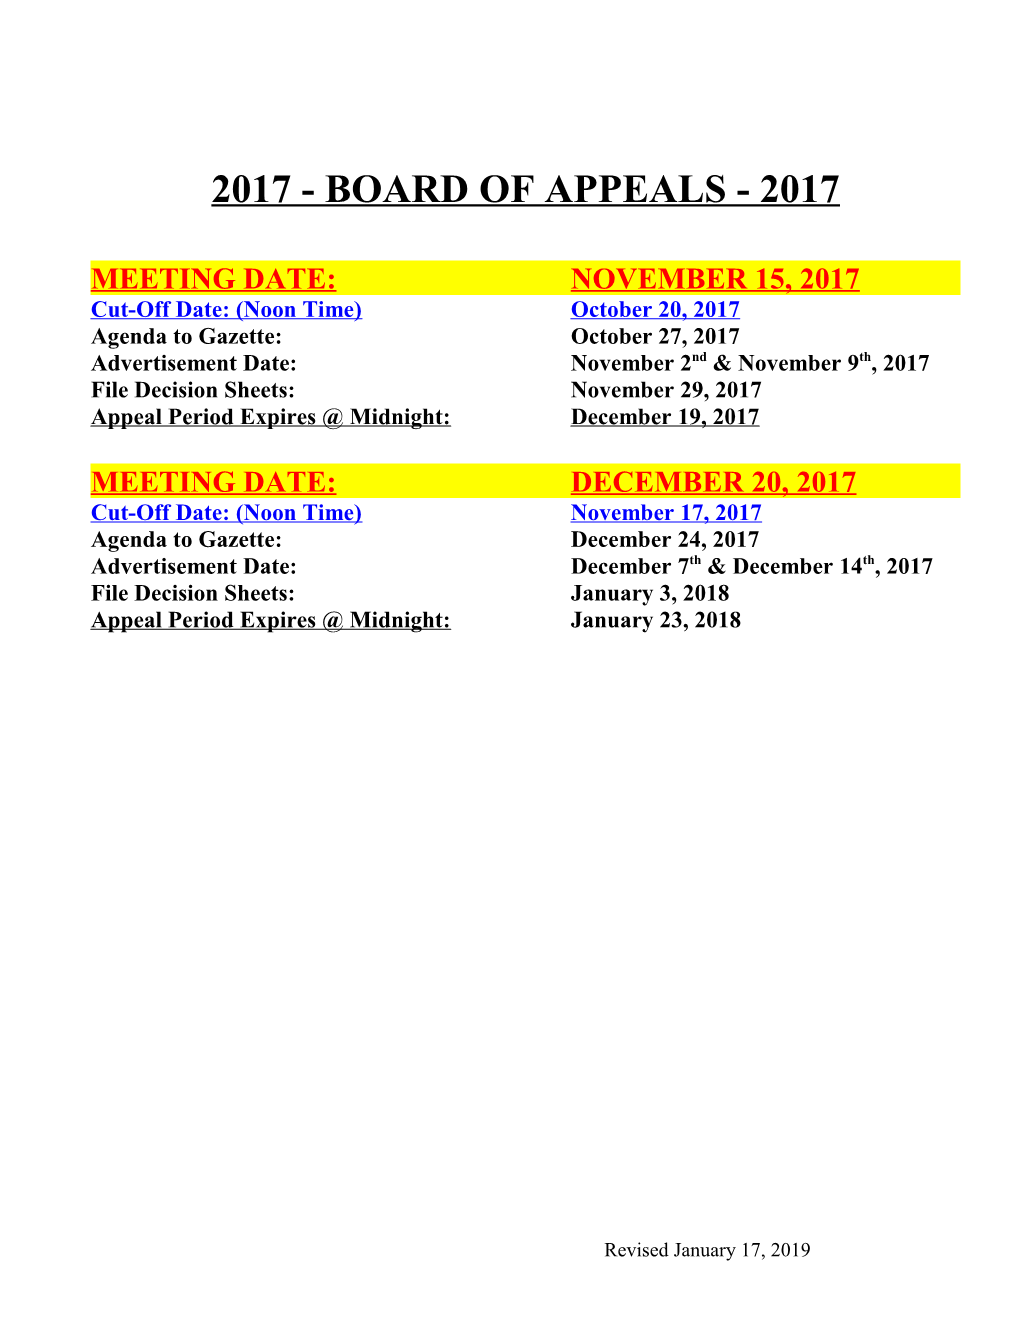 2004 Board of Appeals 2004